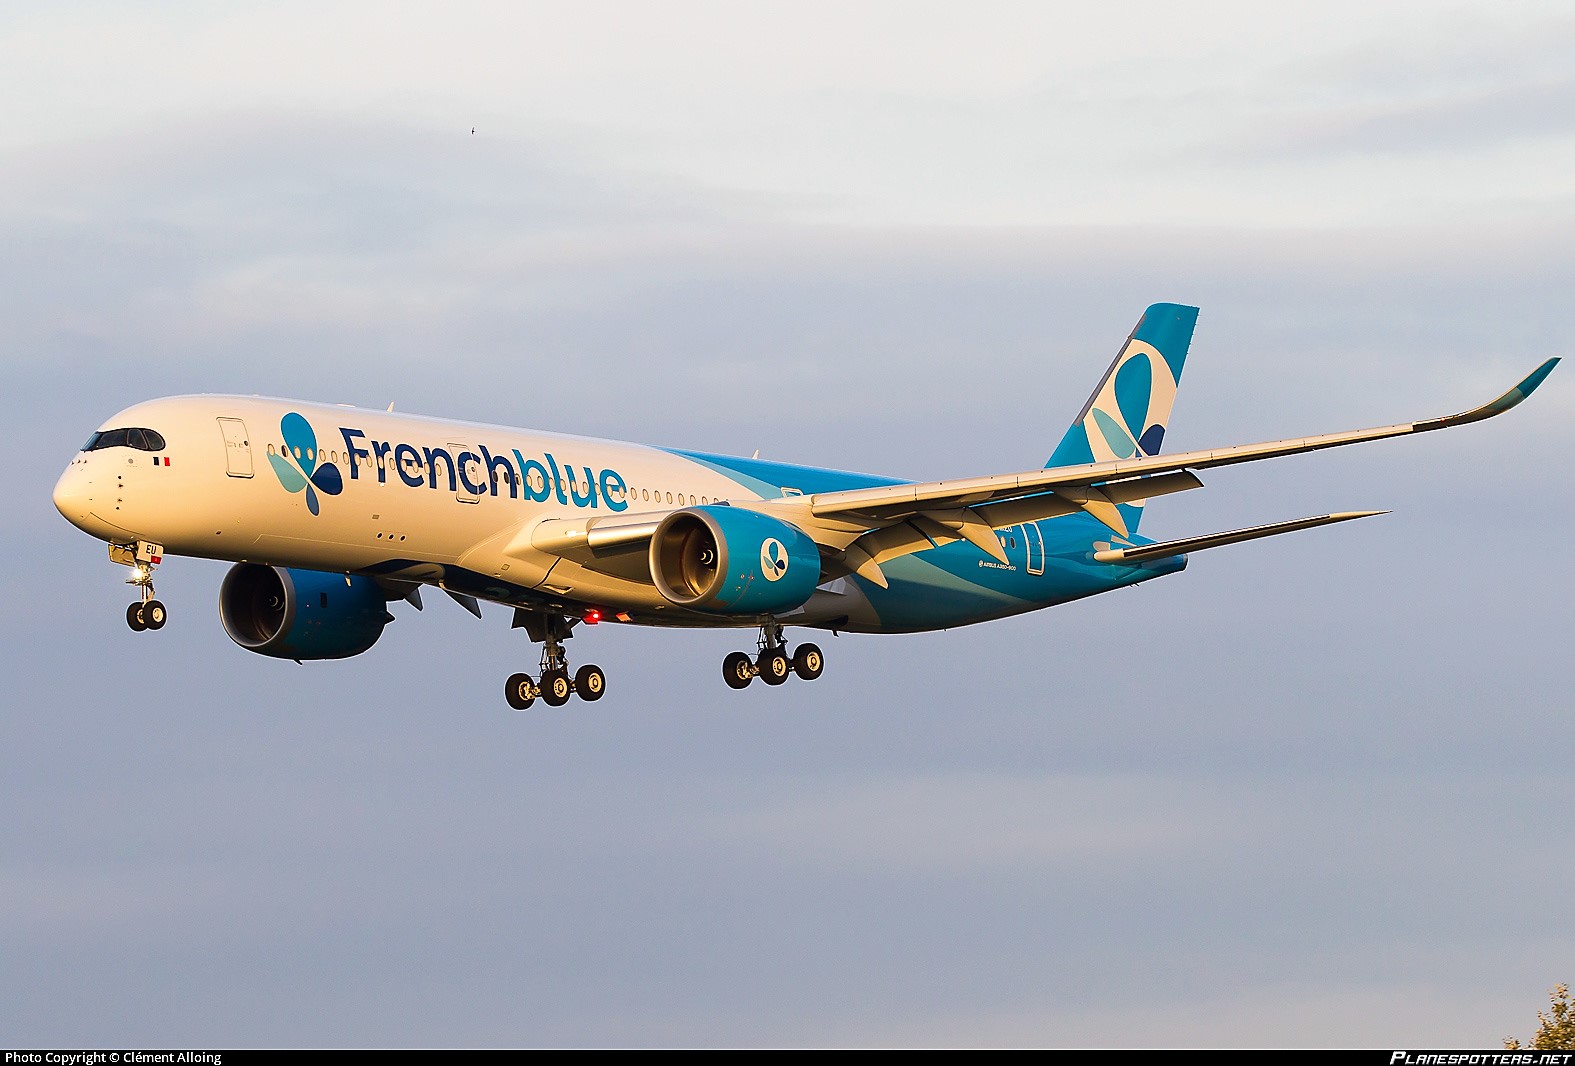 Desserte aérienne : French Blue confirme son arrivée sur la Polynésie